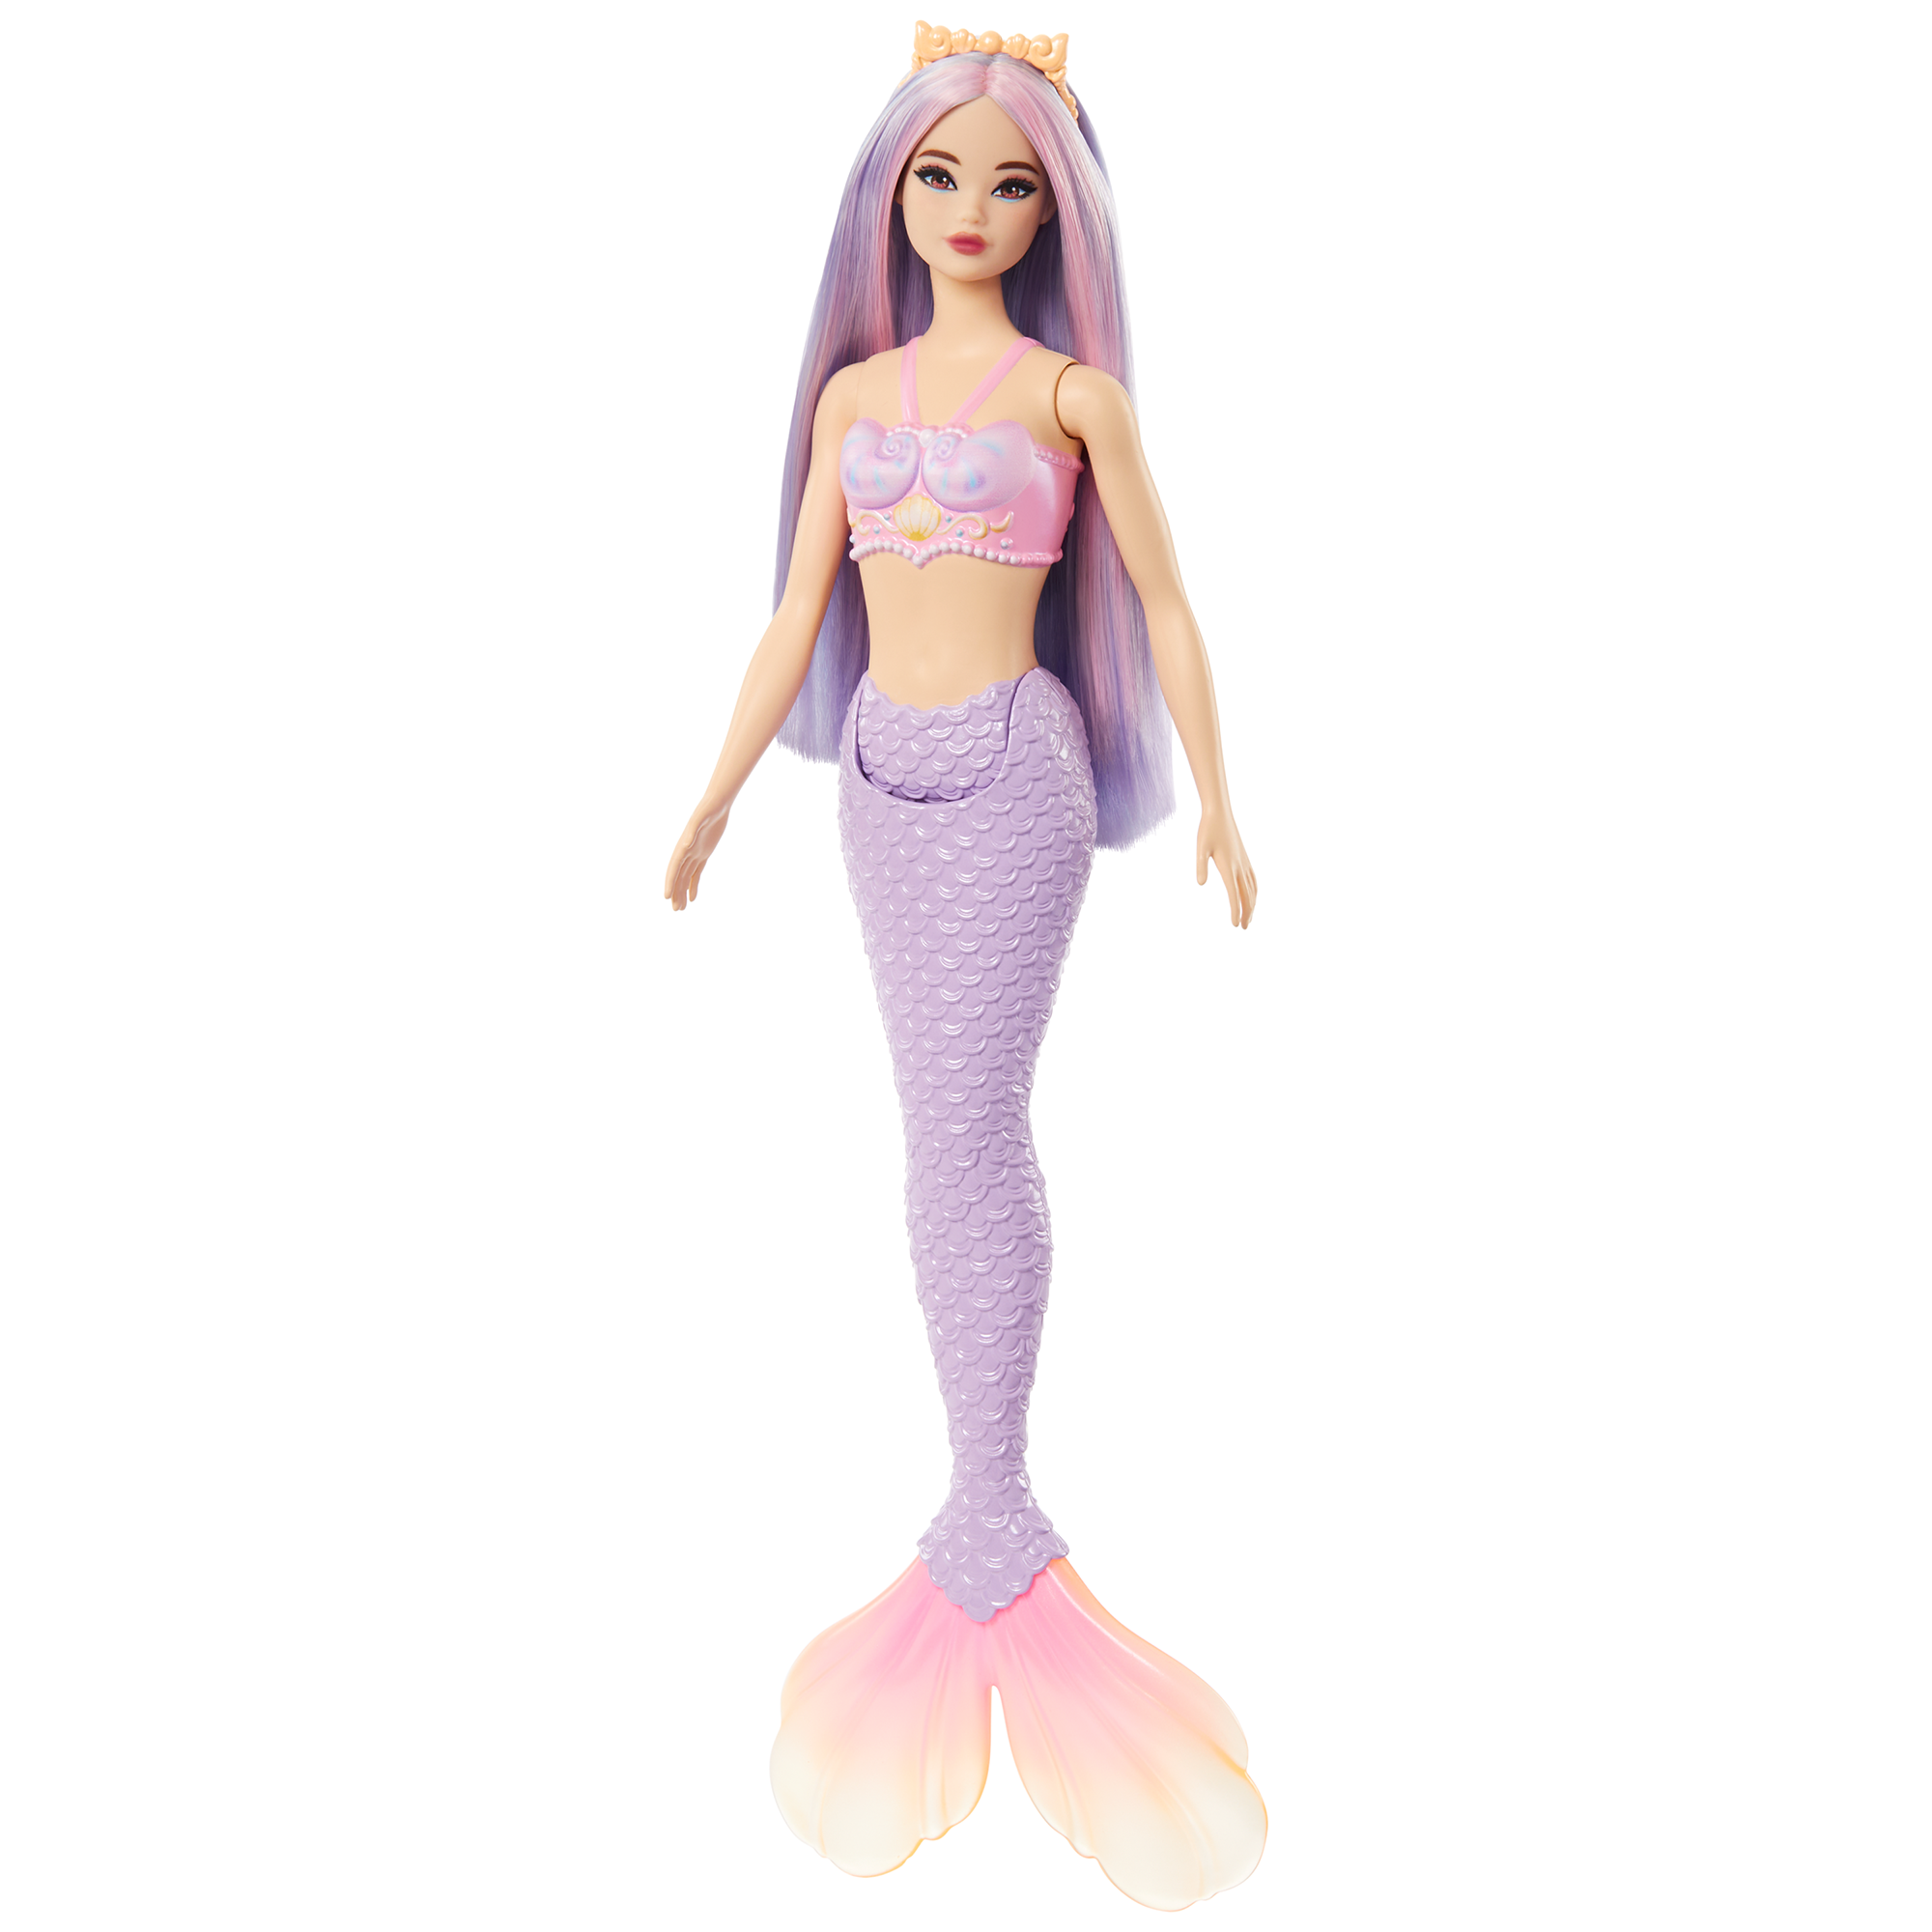 New Barbie mermaid dolls : r/Barbie